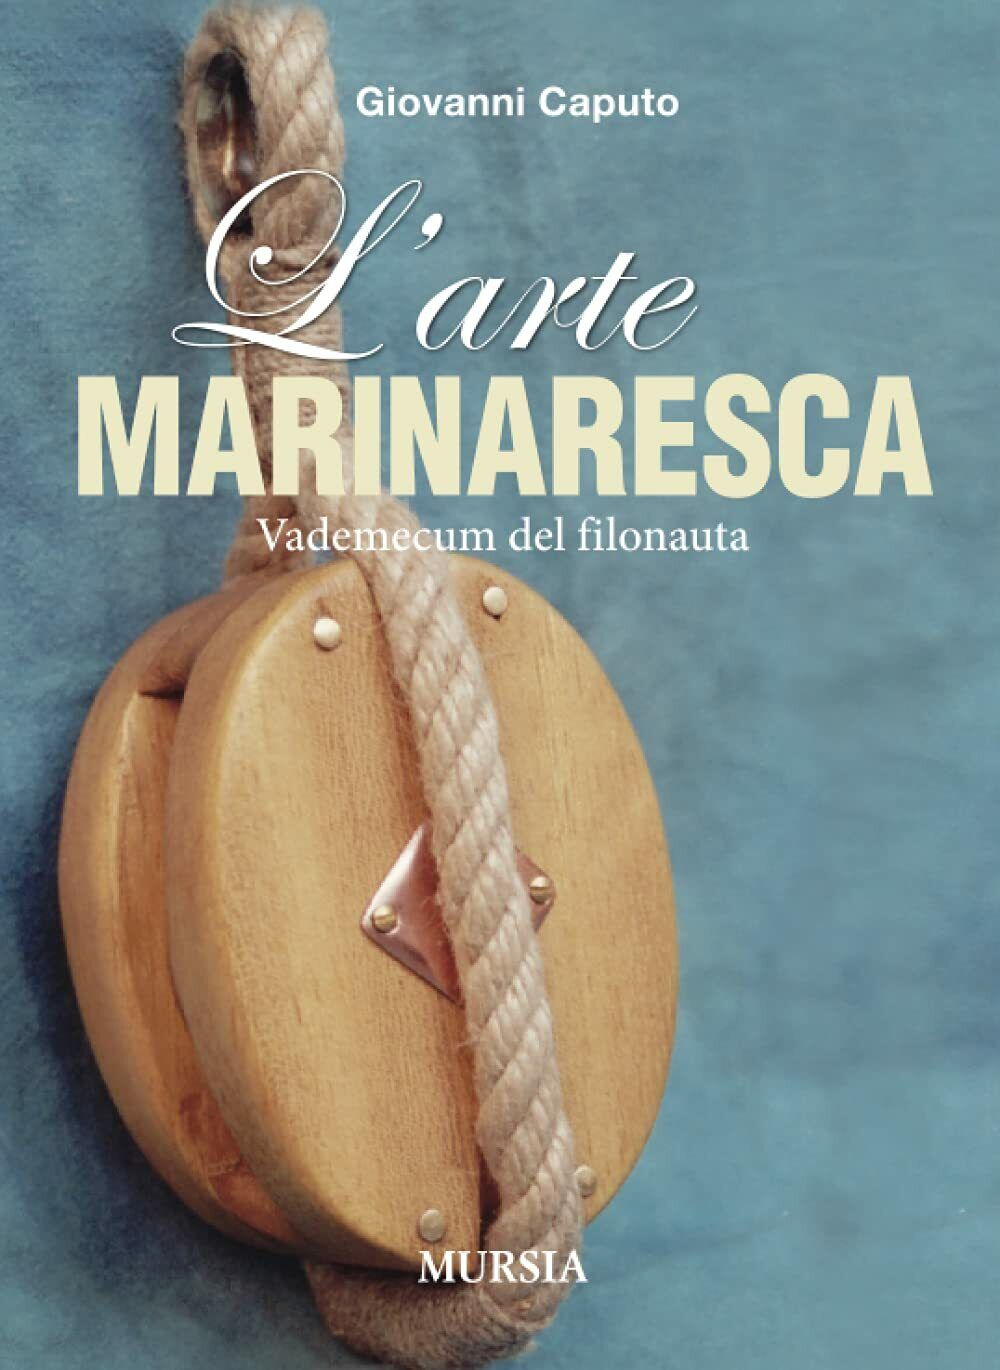 L'arte marinaresca: Vademecum del filonauta - Giovanni Caputo - Mursia, 2013 libro usato